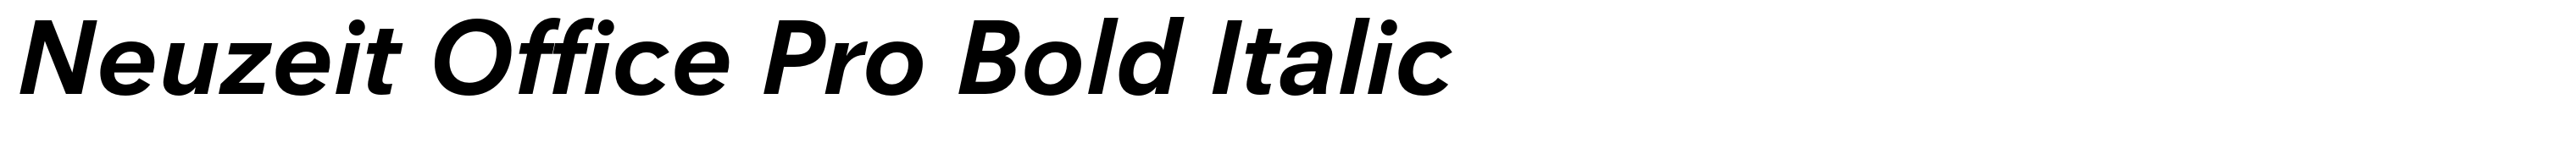 Neuzeit Office Pro Bold Italic